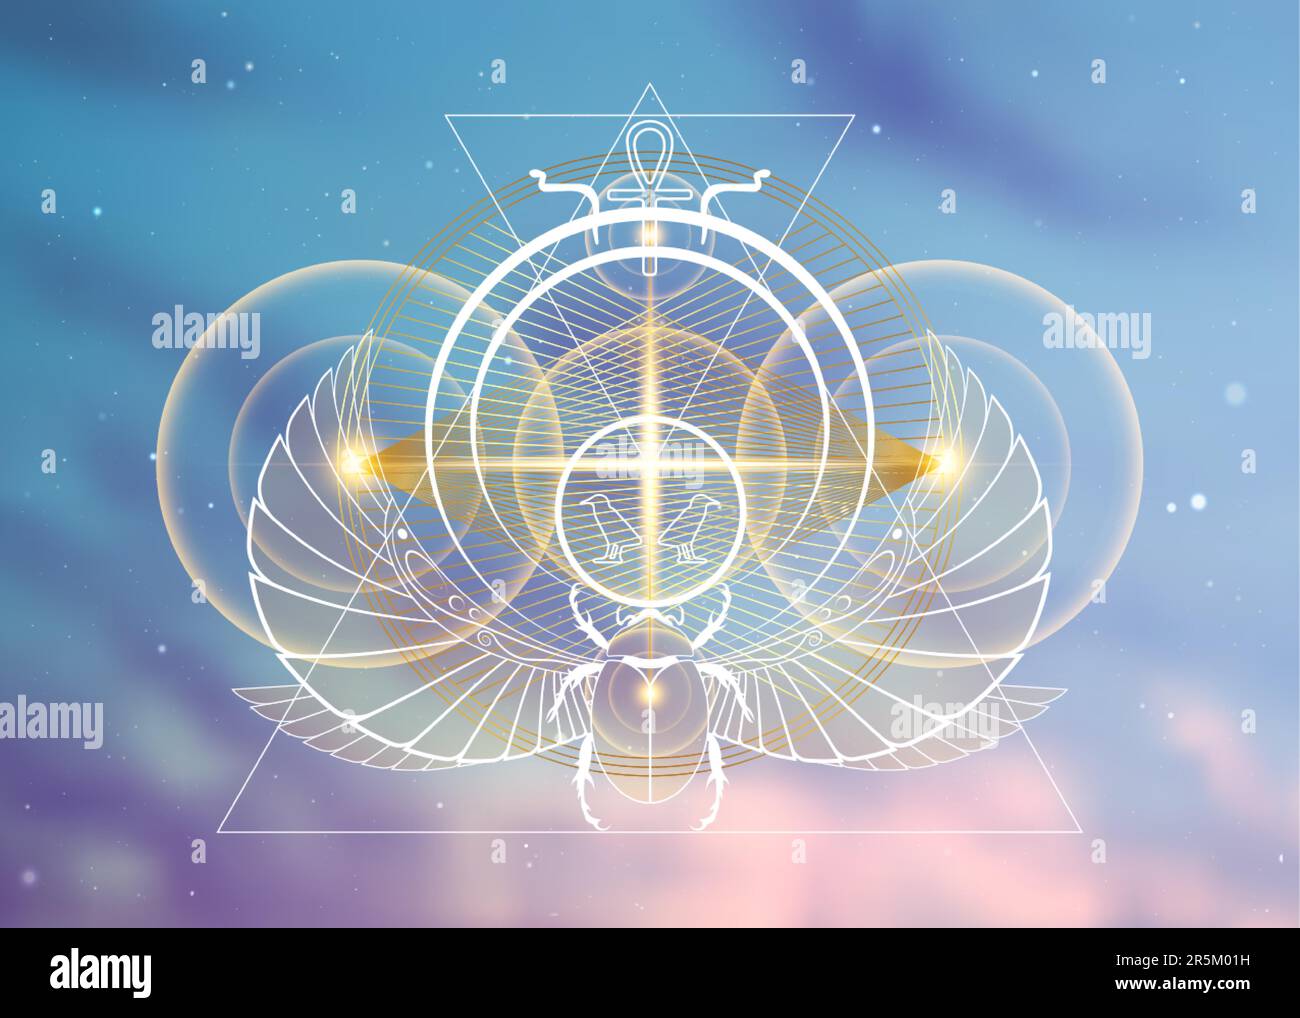 Geometria sacra planetaria egiziana, sovrapposizione delle linee d'oro scarabeo, forma a triangoli su cerchi. Orbite dell'energia divina. Alchimia, magia, esoterica Illustrazione Vettoriale